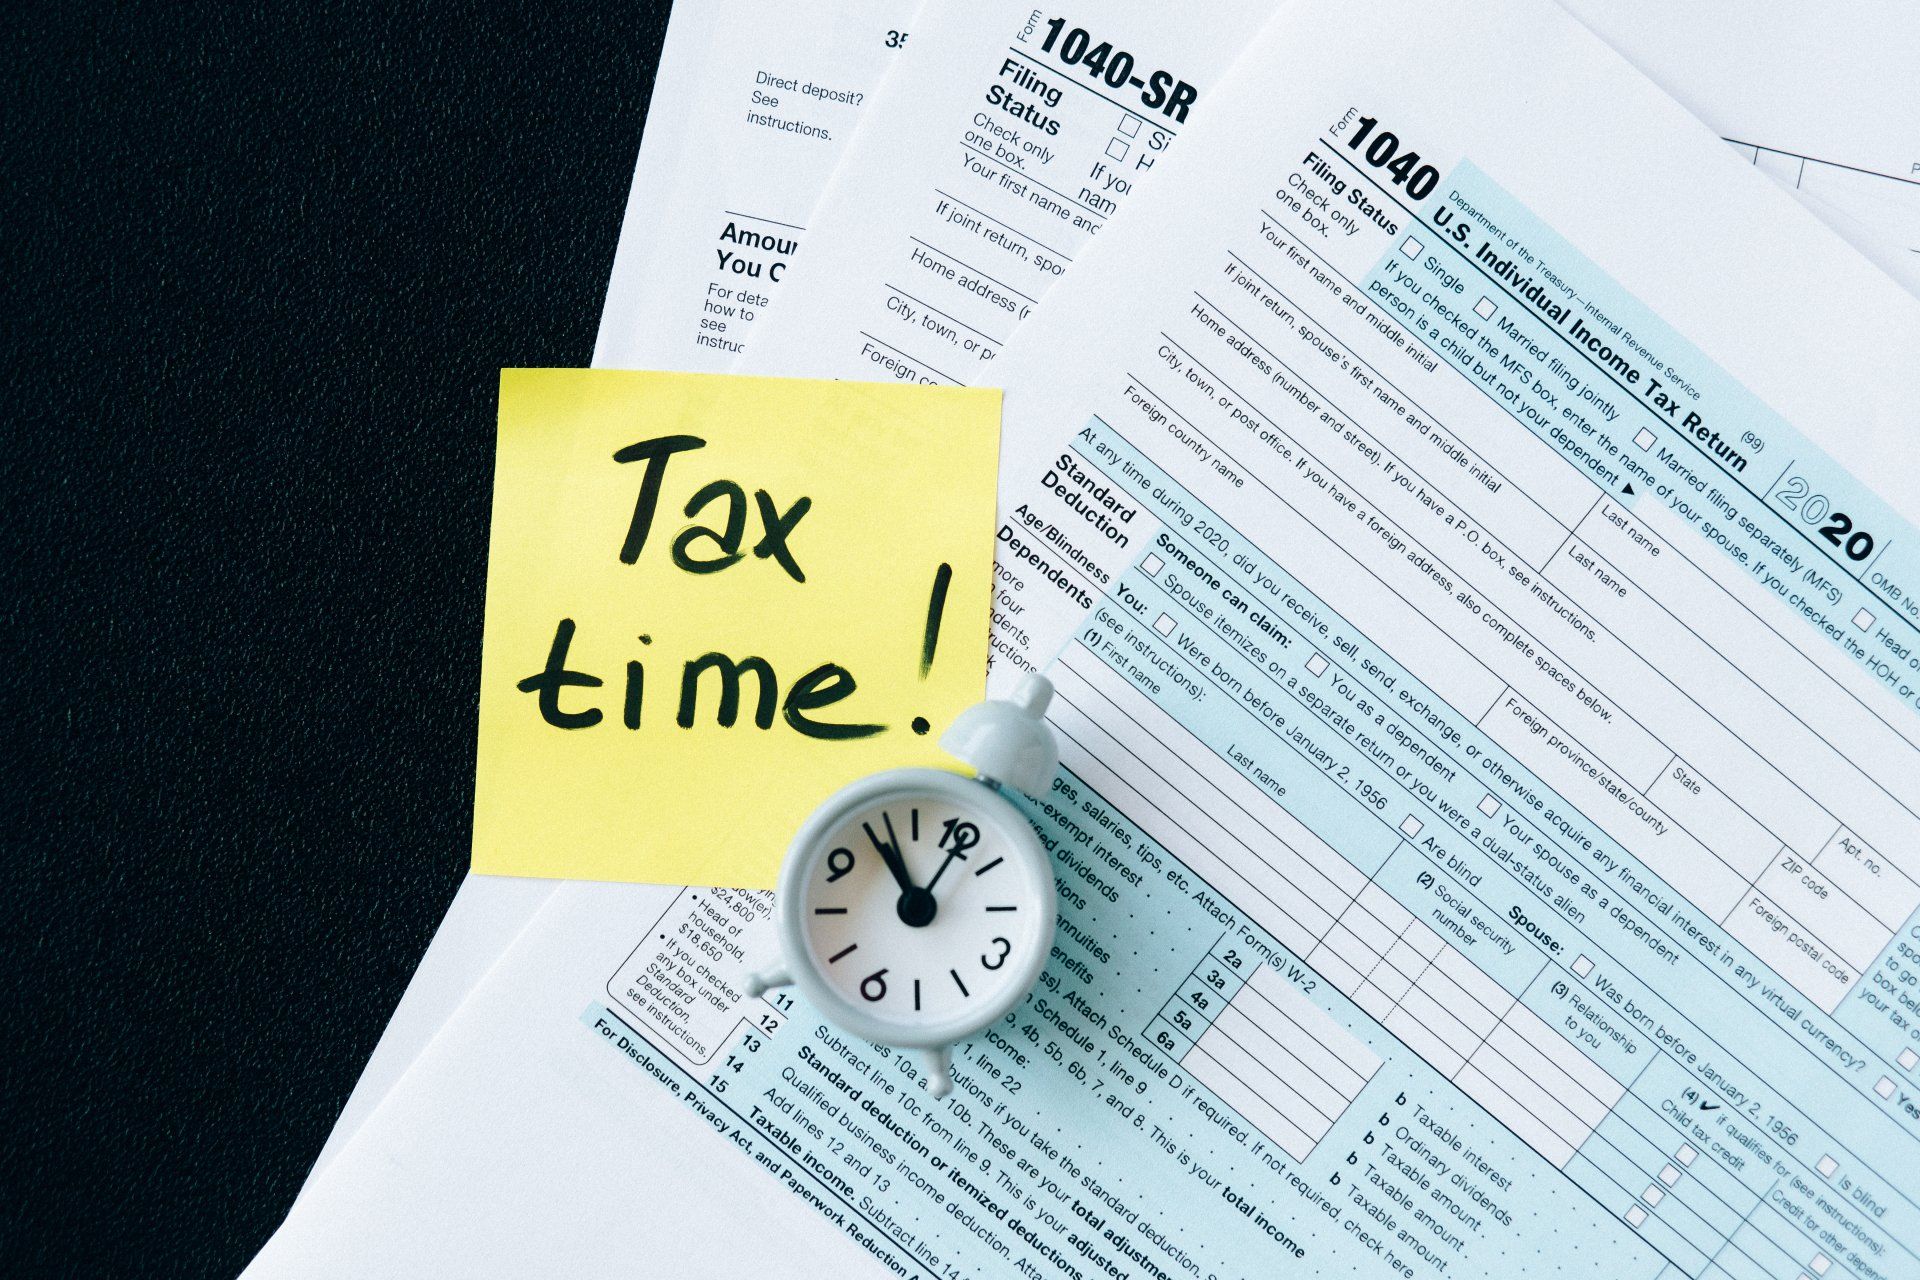 Tax returns, self assessment, registering for self assessment, self employed, Tax, Income, reporting